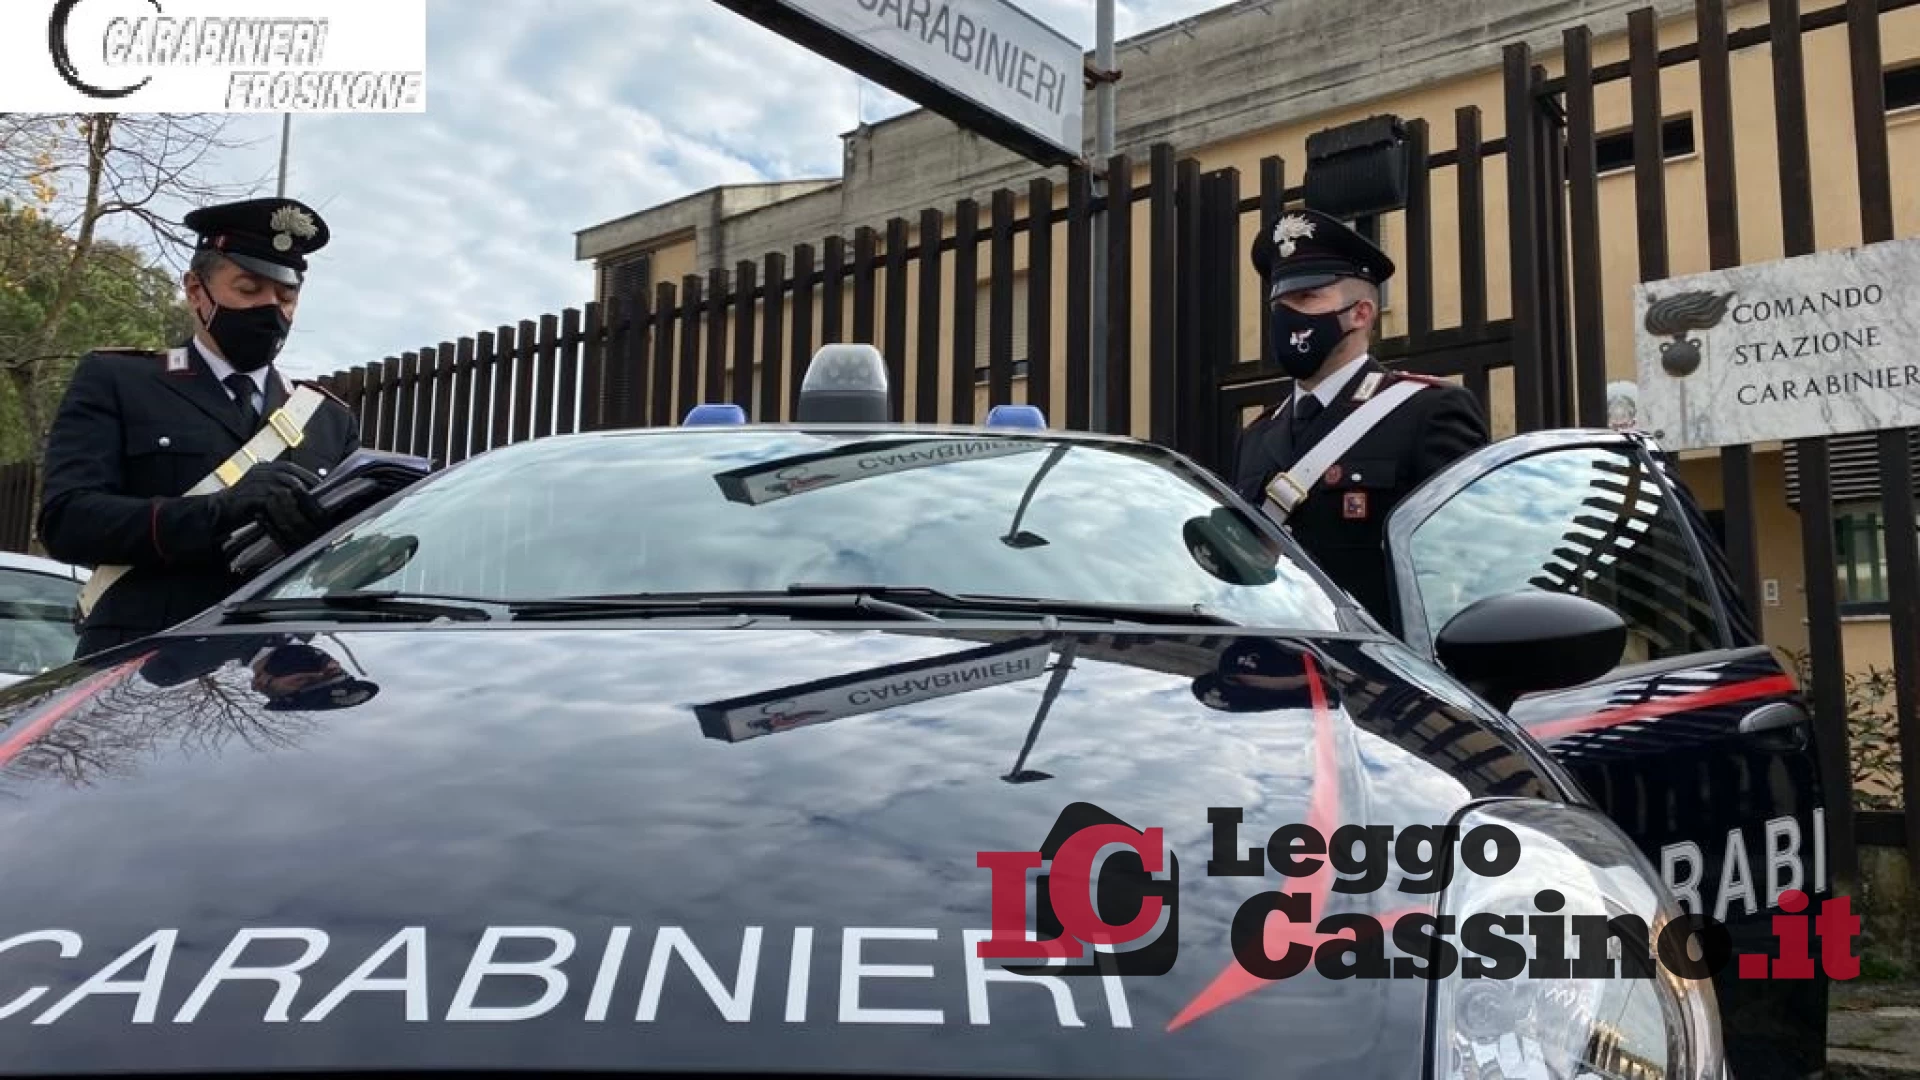 Senza mascherine e senza avvisi obbligatori all'esterno: i carabinieri fanno chiudere un circolo